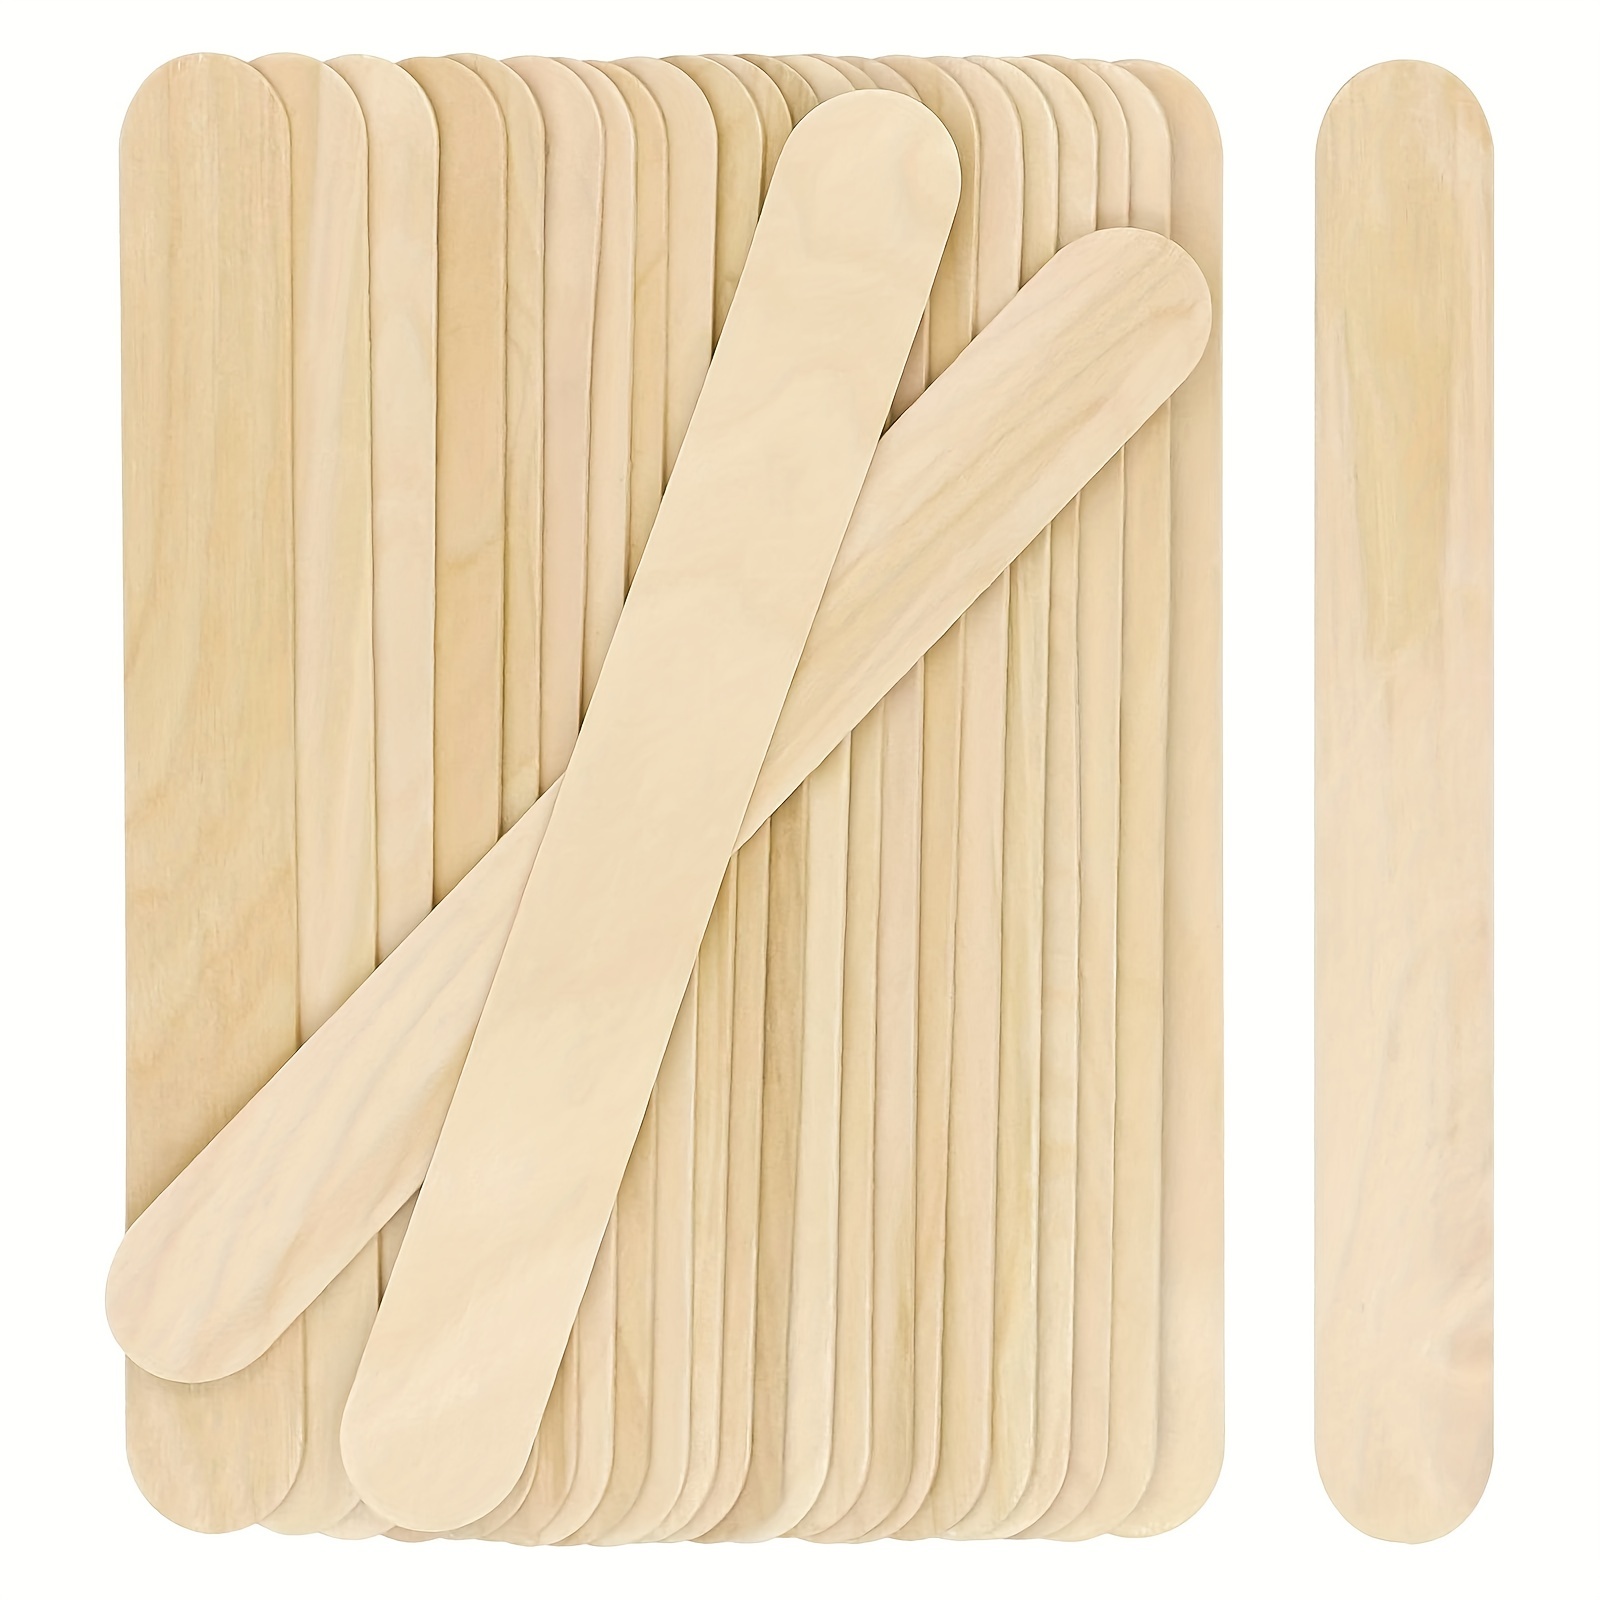 Jumbo Wooden Craft Sticks